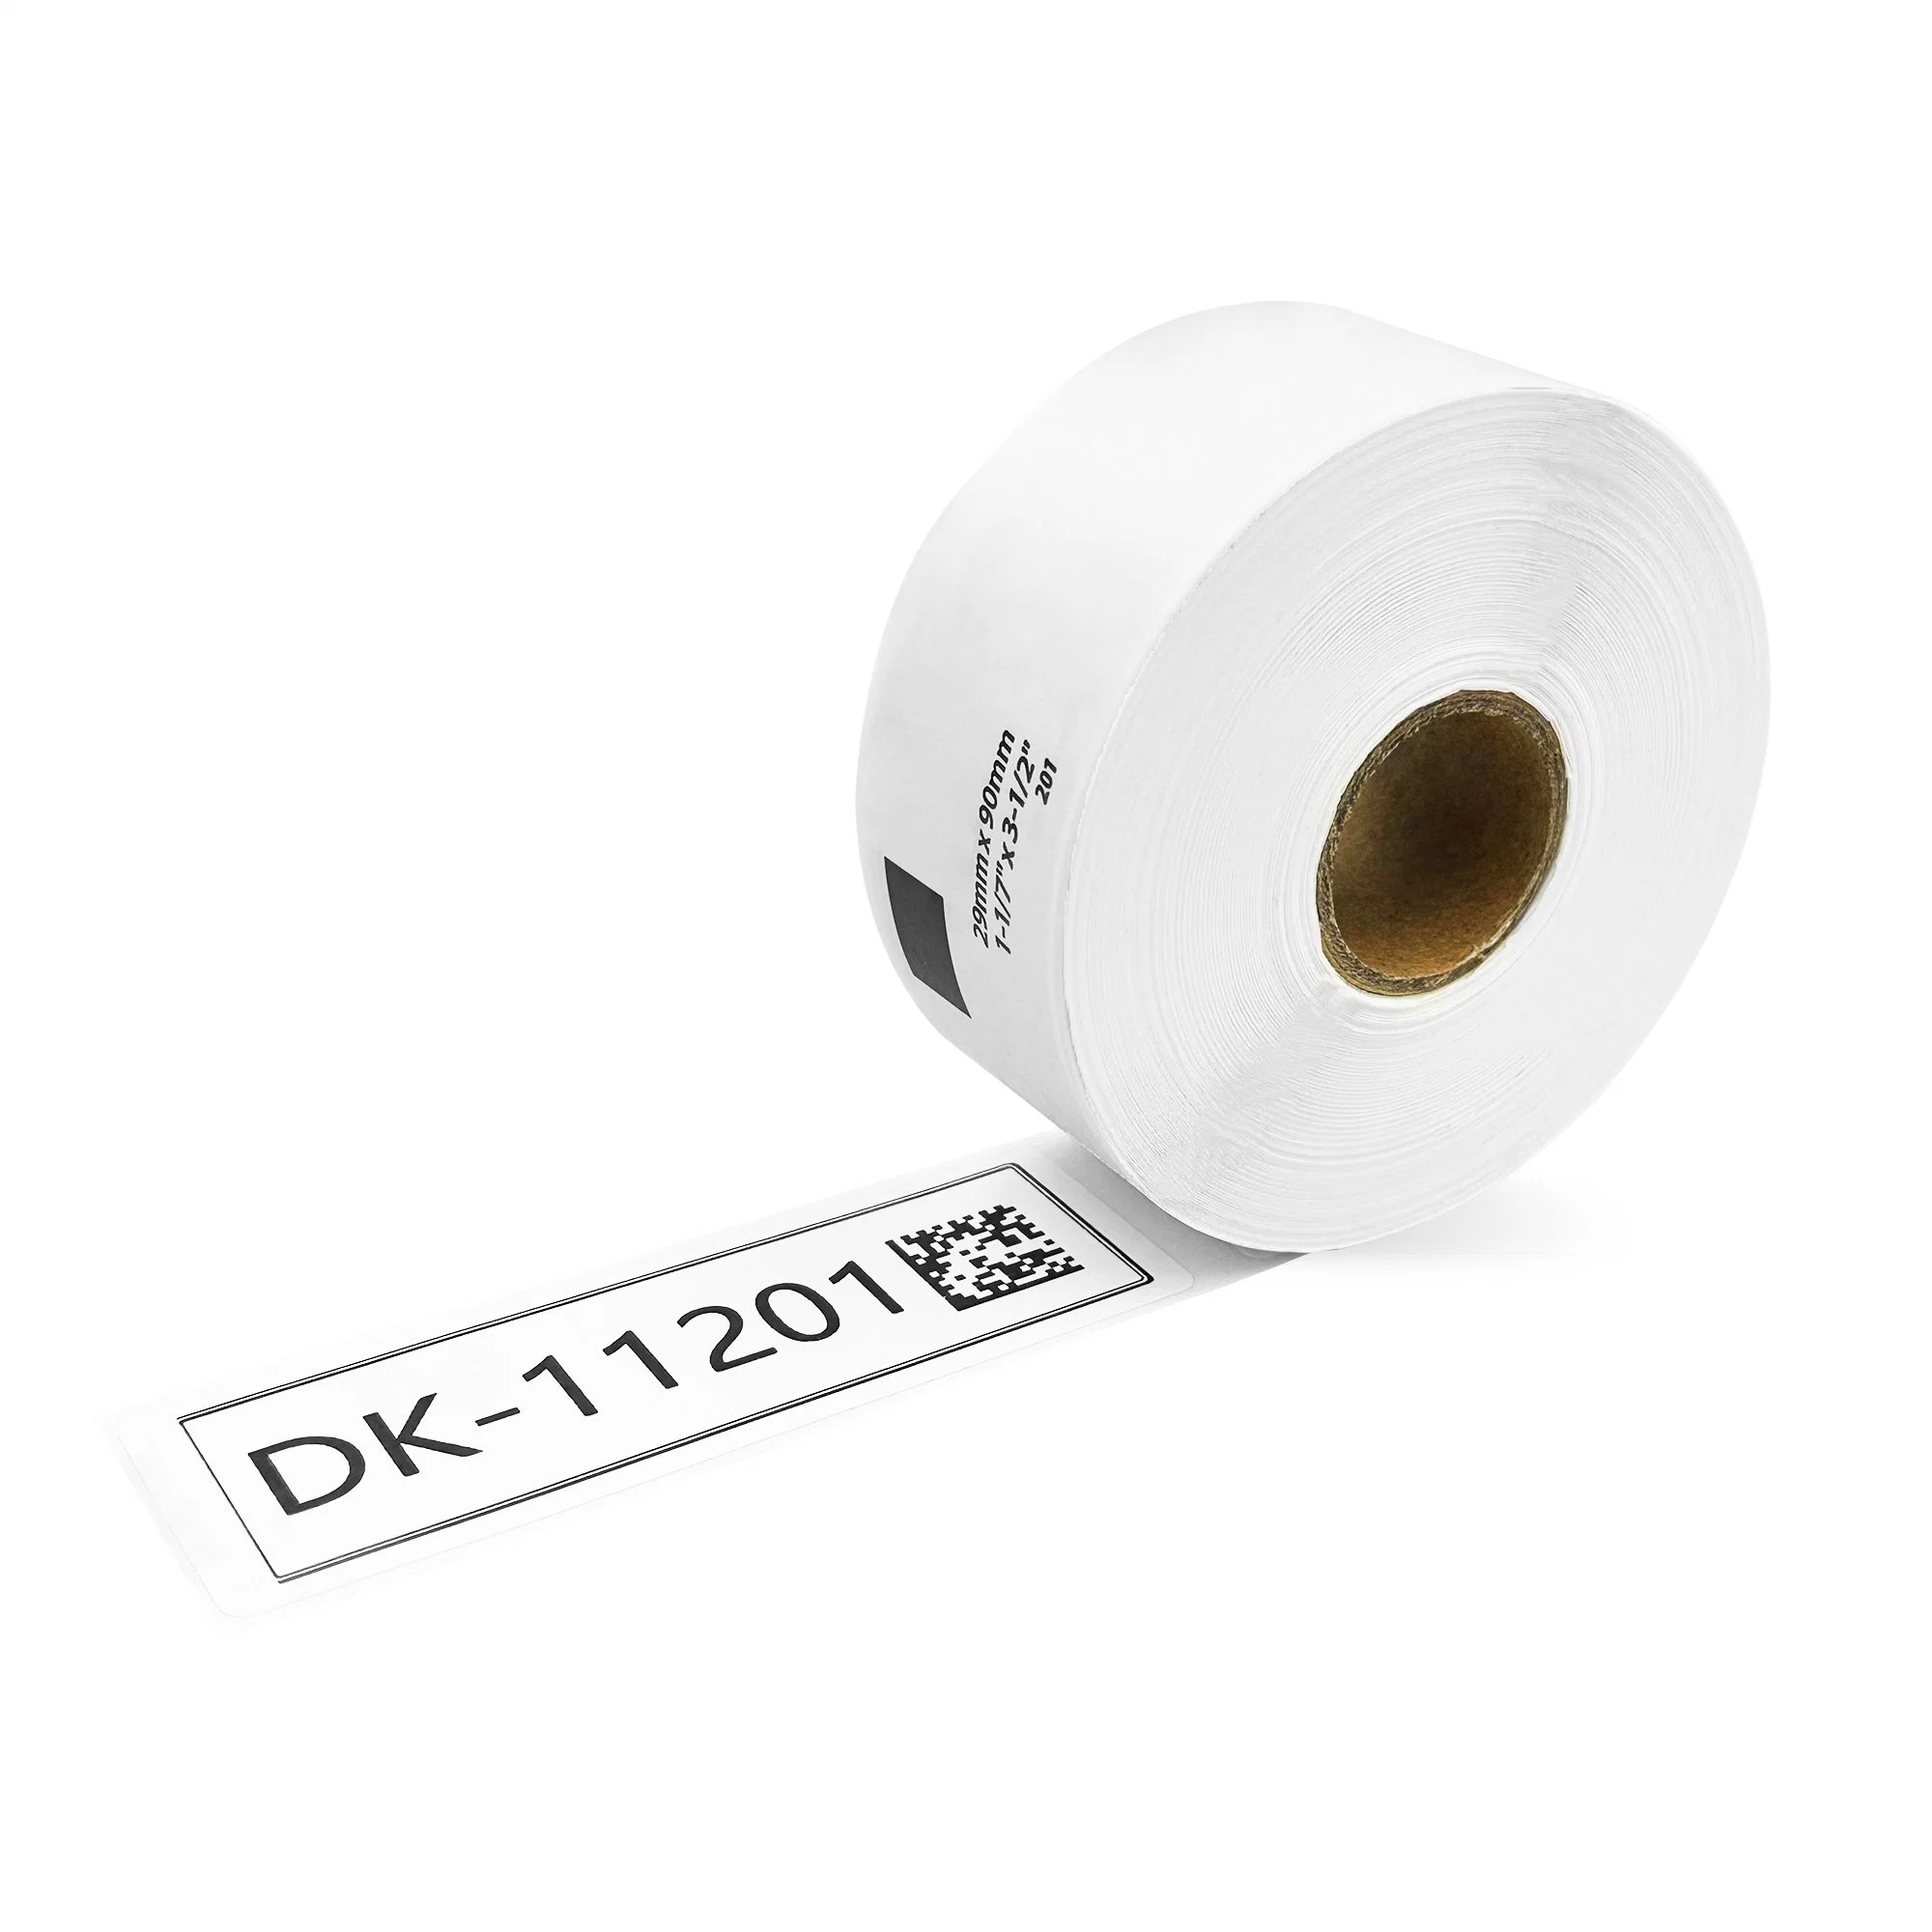 Cinta de papel compatible Brother serie DK Dk11201 DK-11202 (Negro sobre papel de color)